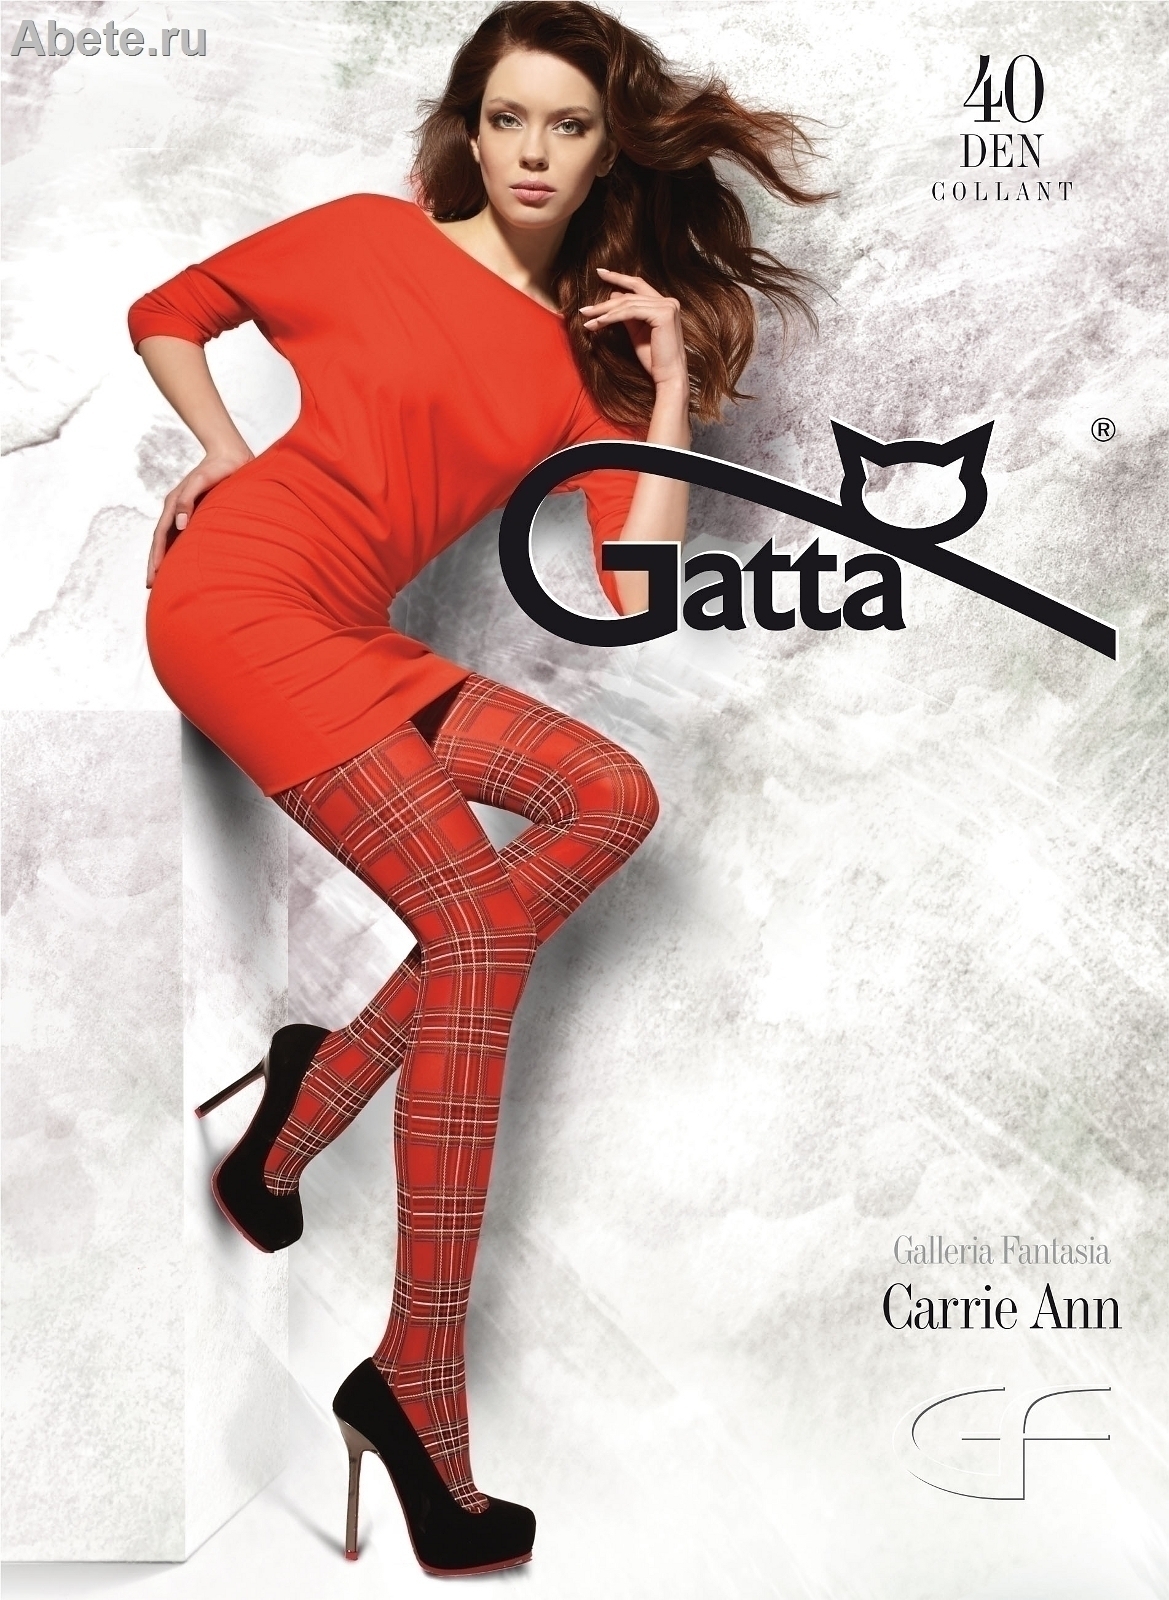 GATTA Carrie Ann 02